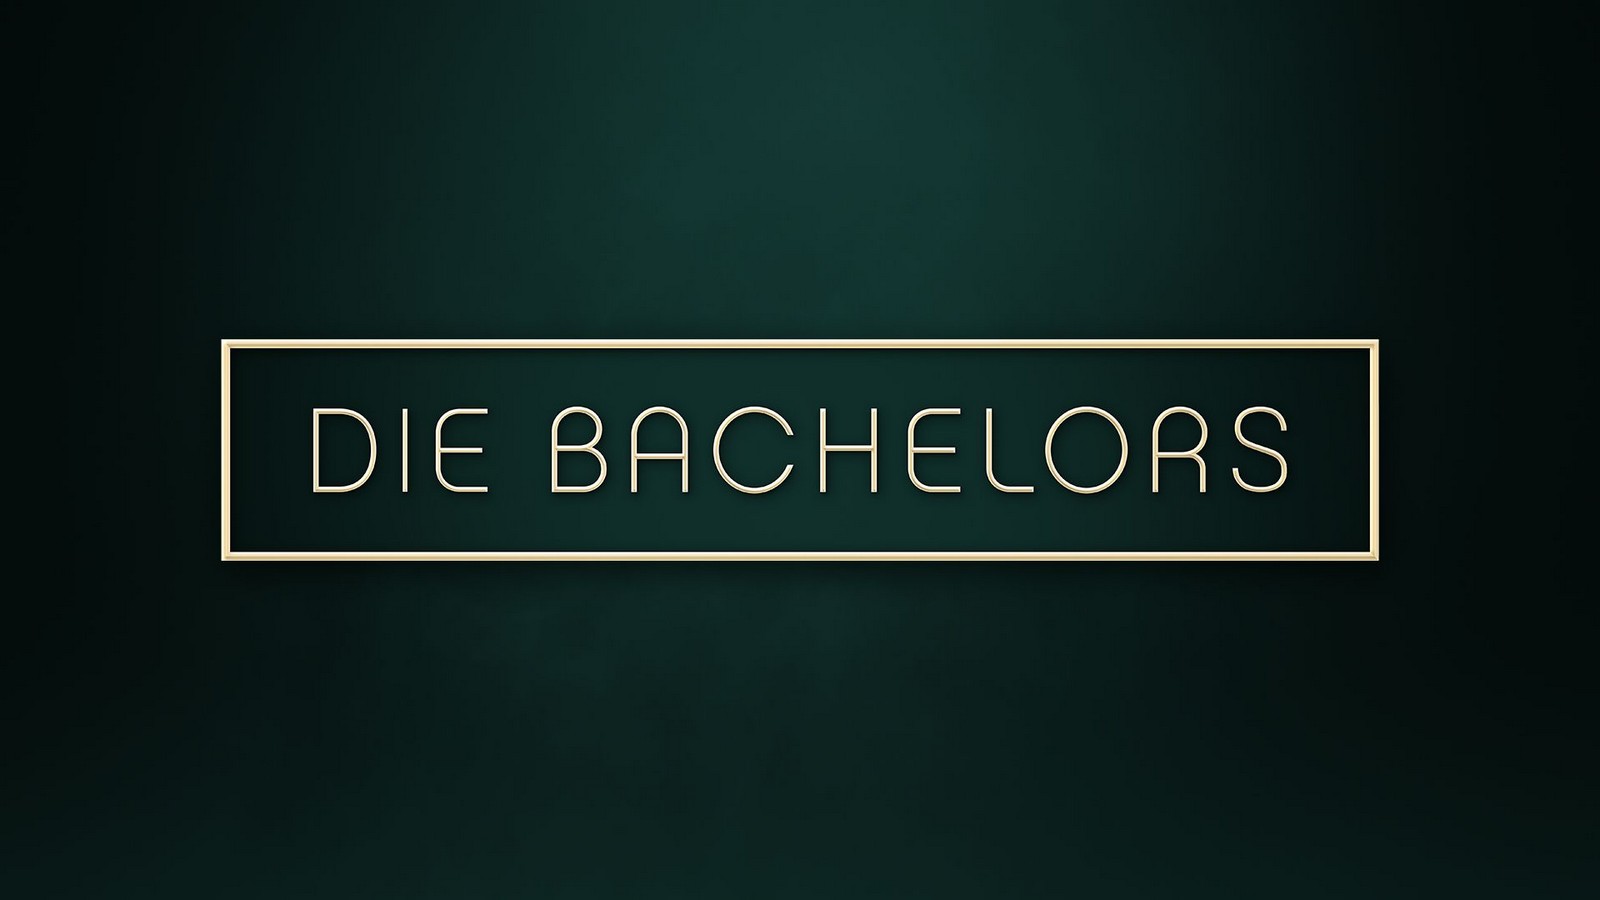 "Die Bachelors"